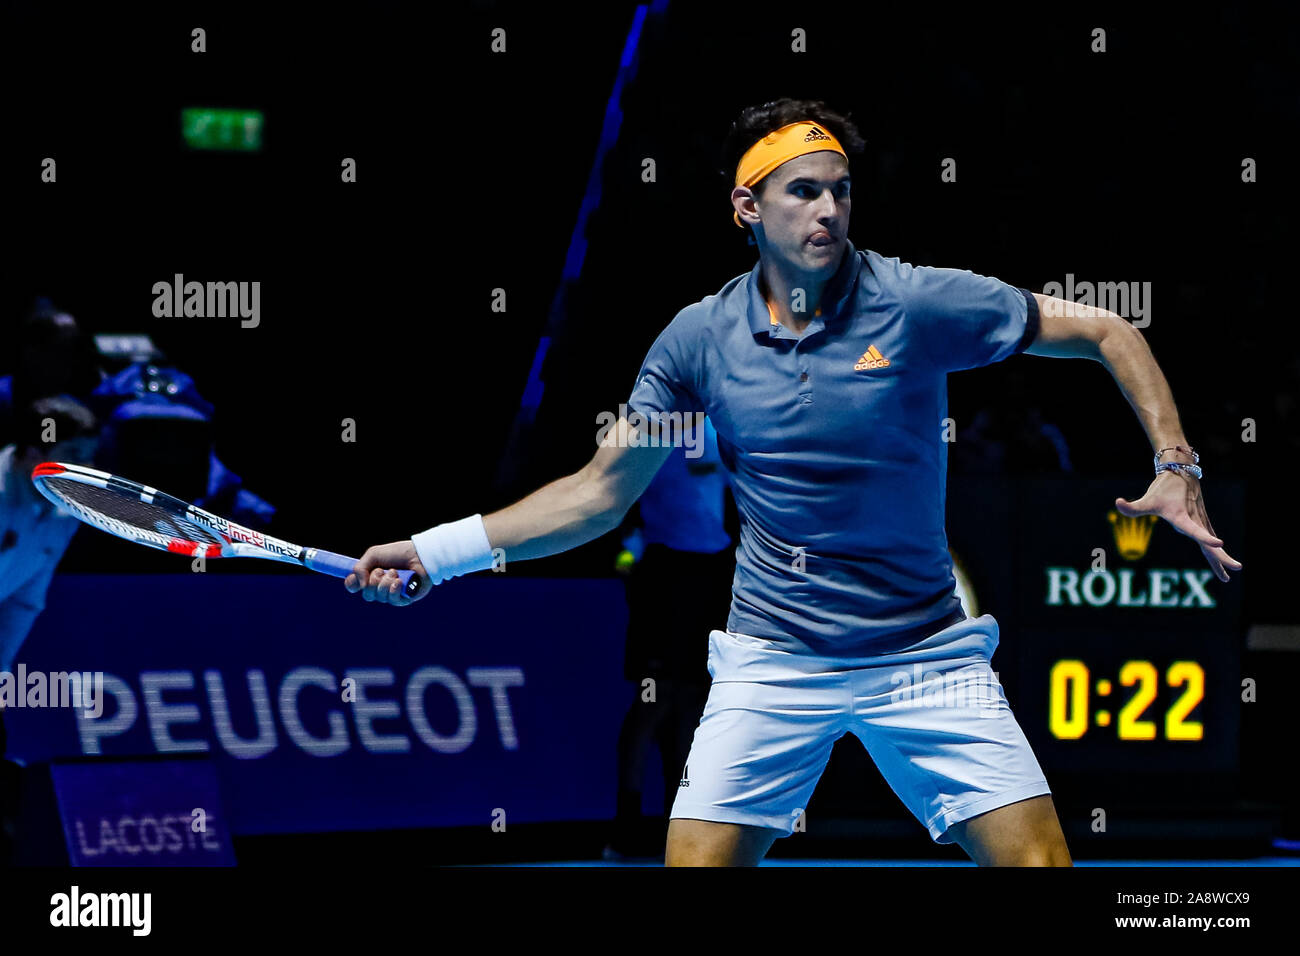 Dominic Thiem dell'Austria durante la sua partita contro Roger Federer al Giorno uno del Nitto ATP World Tour Finals presso l'Arena O2 il 10 novembre 2019 a Londra, Inghilterra Foto Stock